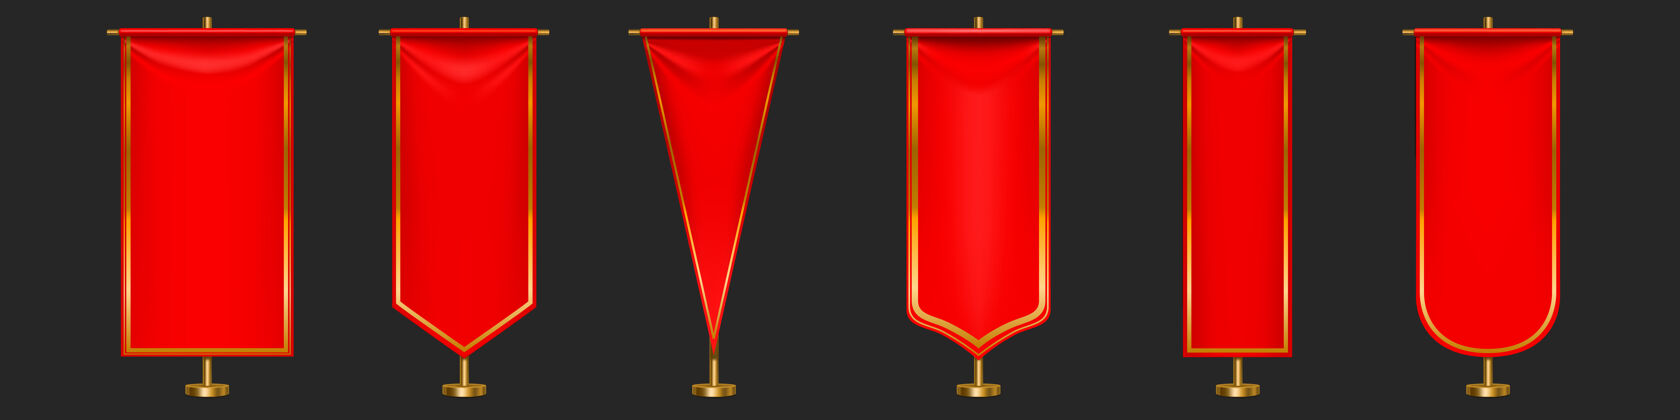 足球红旗在金柱上悬挂着不同形状的旗帜体育三角Pennant